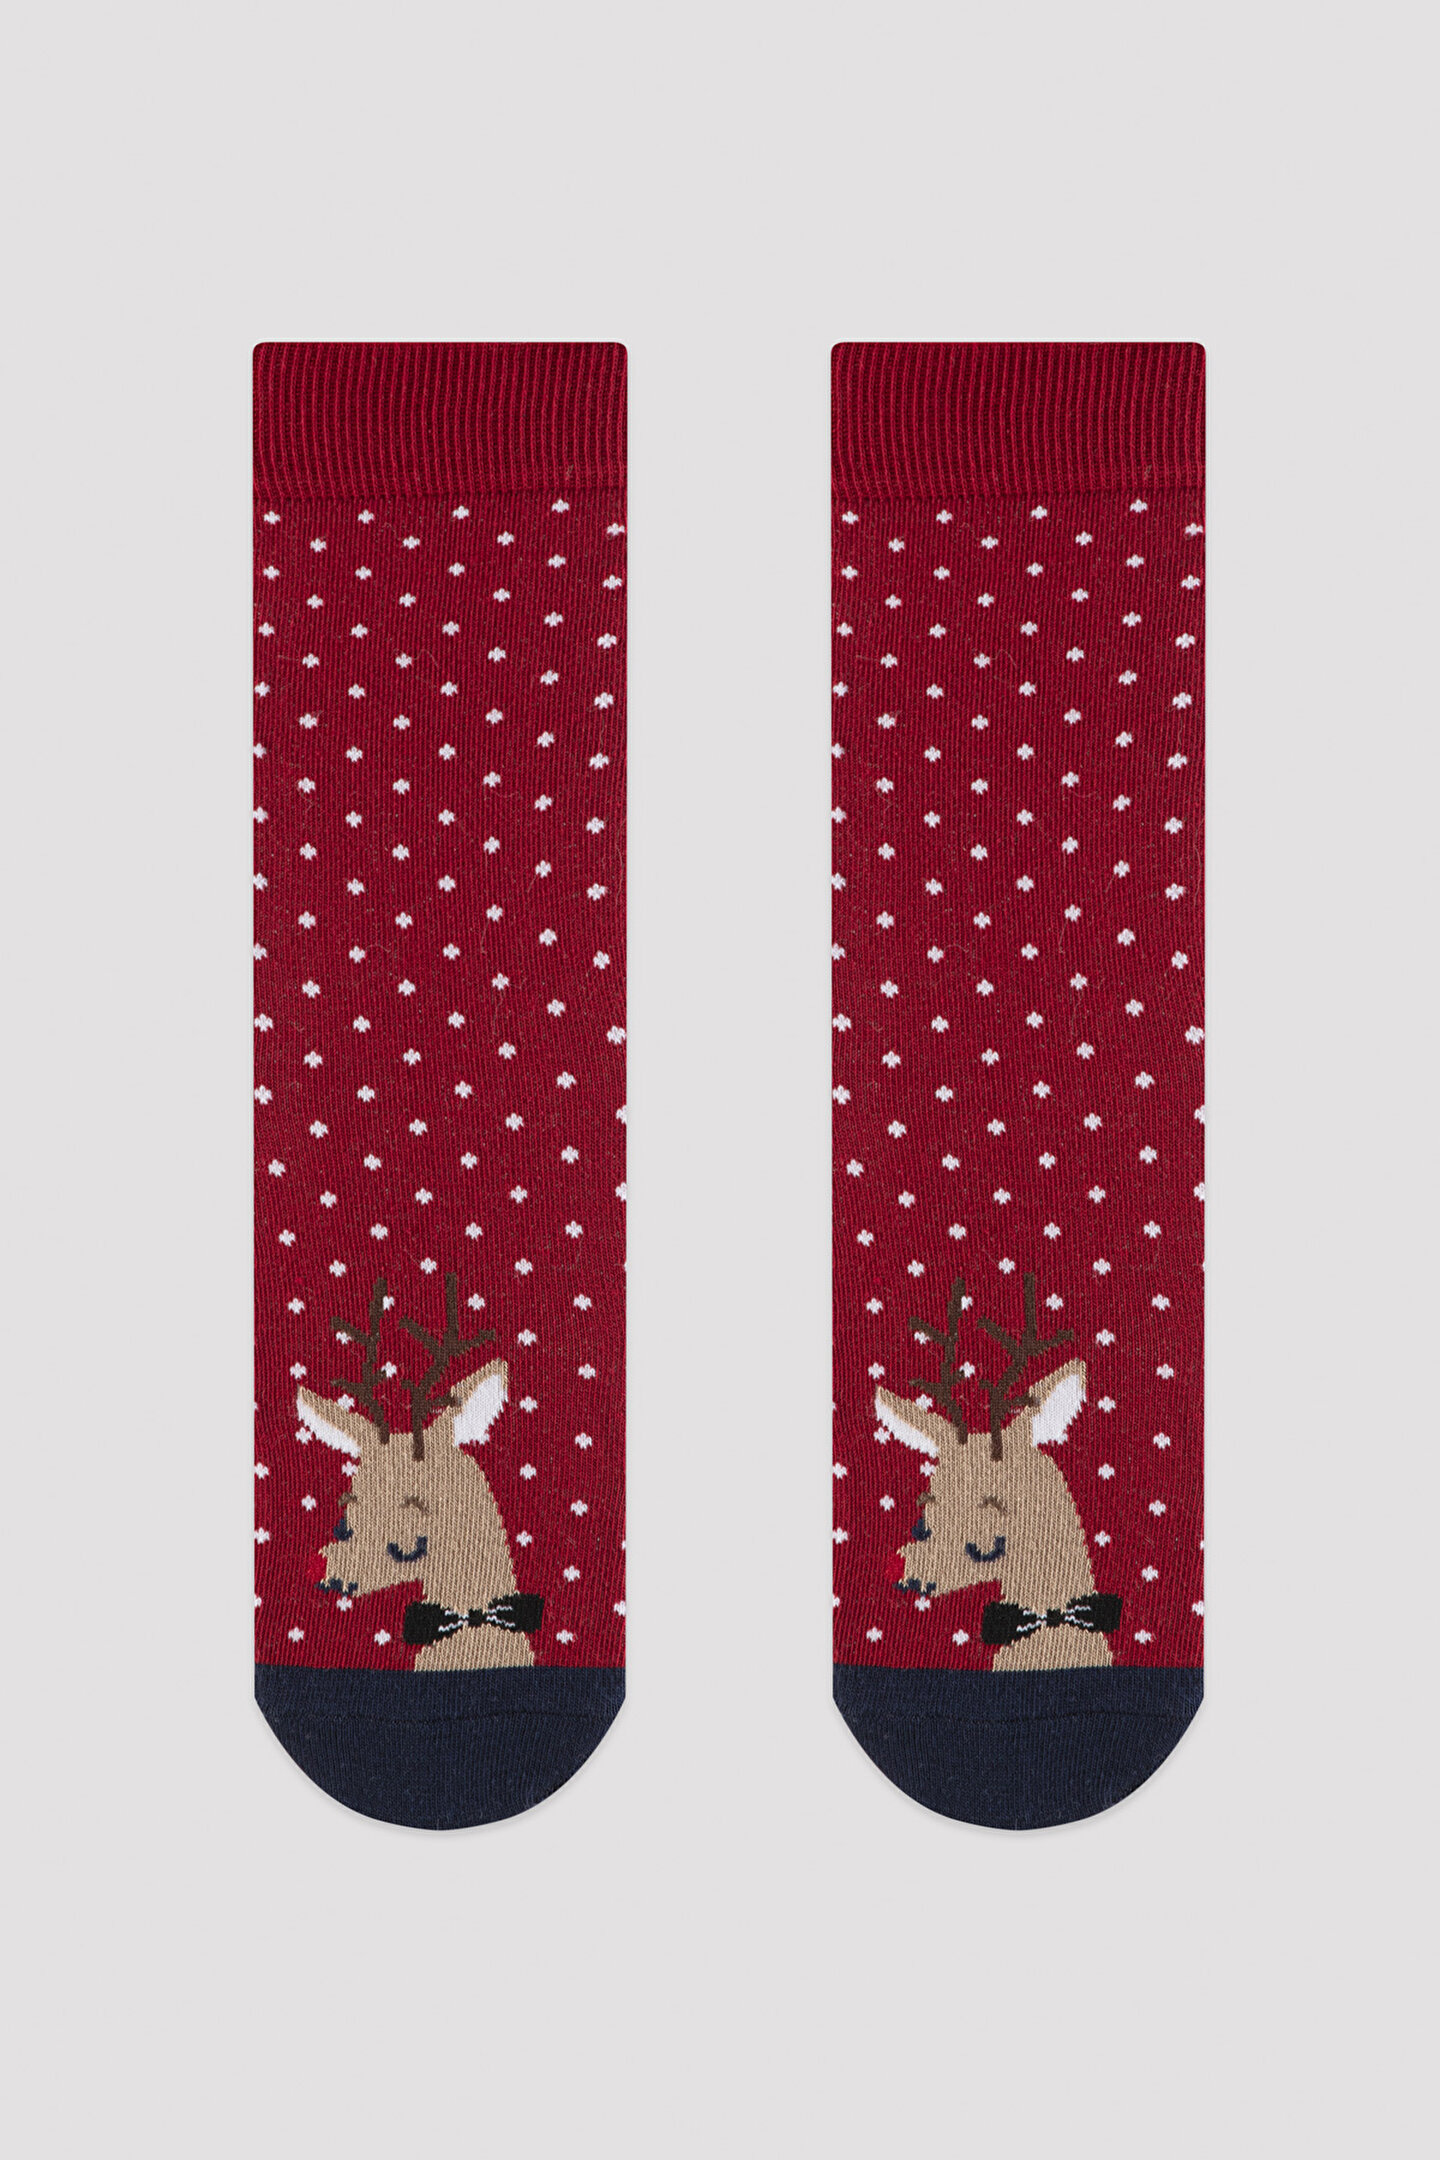 Oh Deer NY Fam Socks - 1